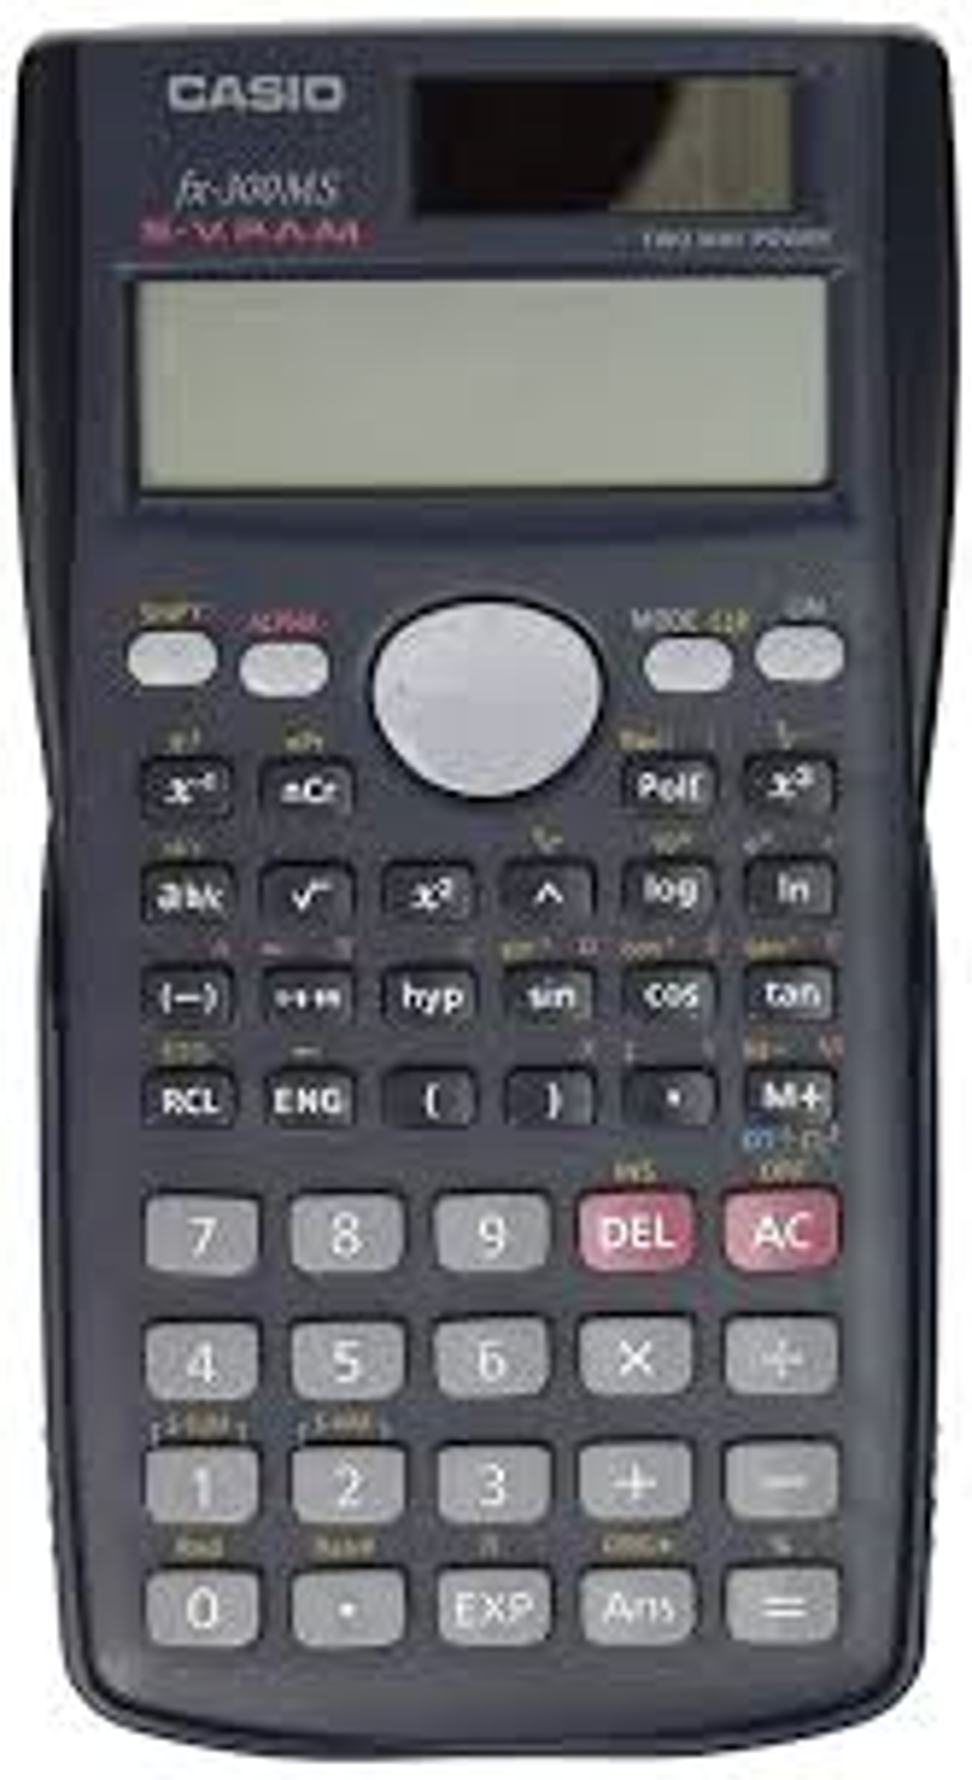 A Casio scientific calculator.